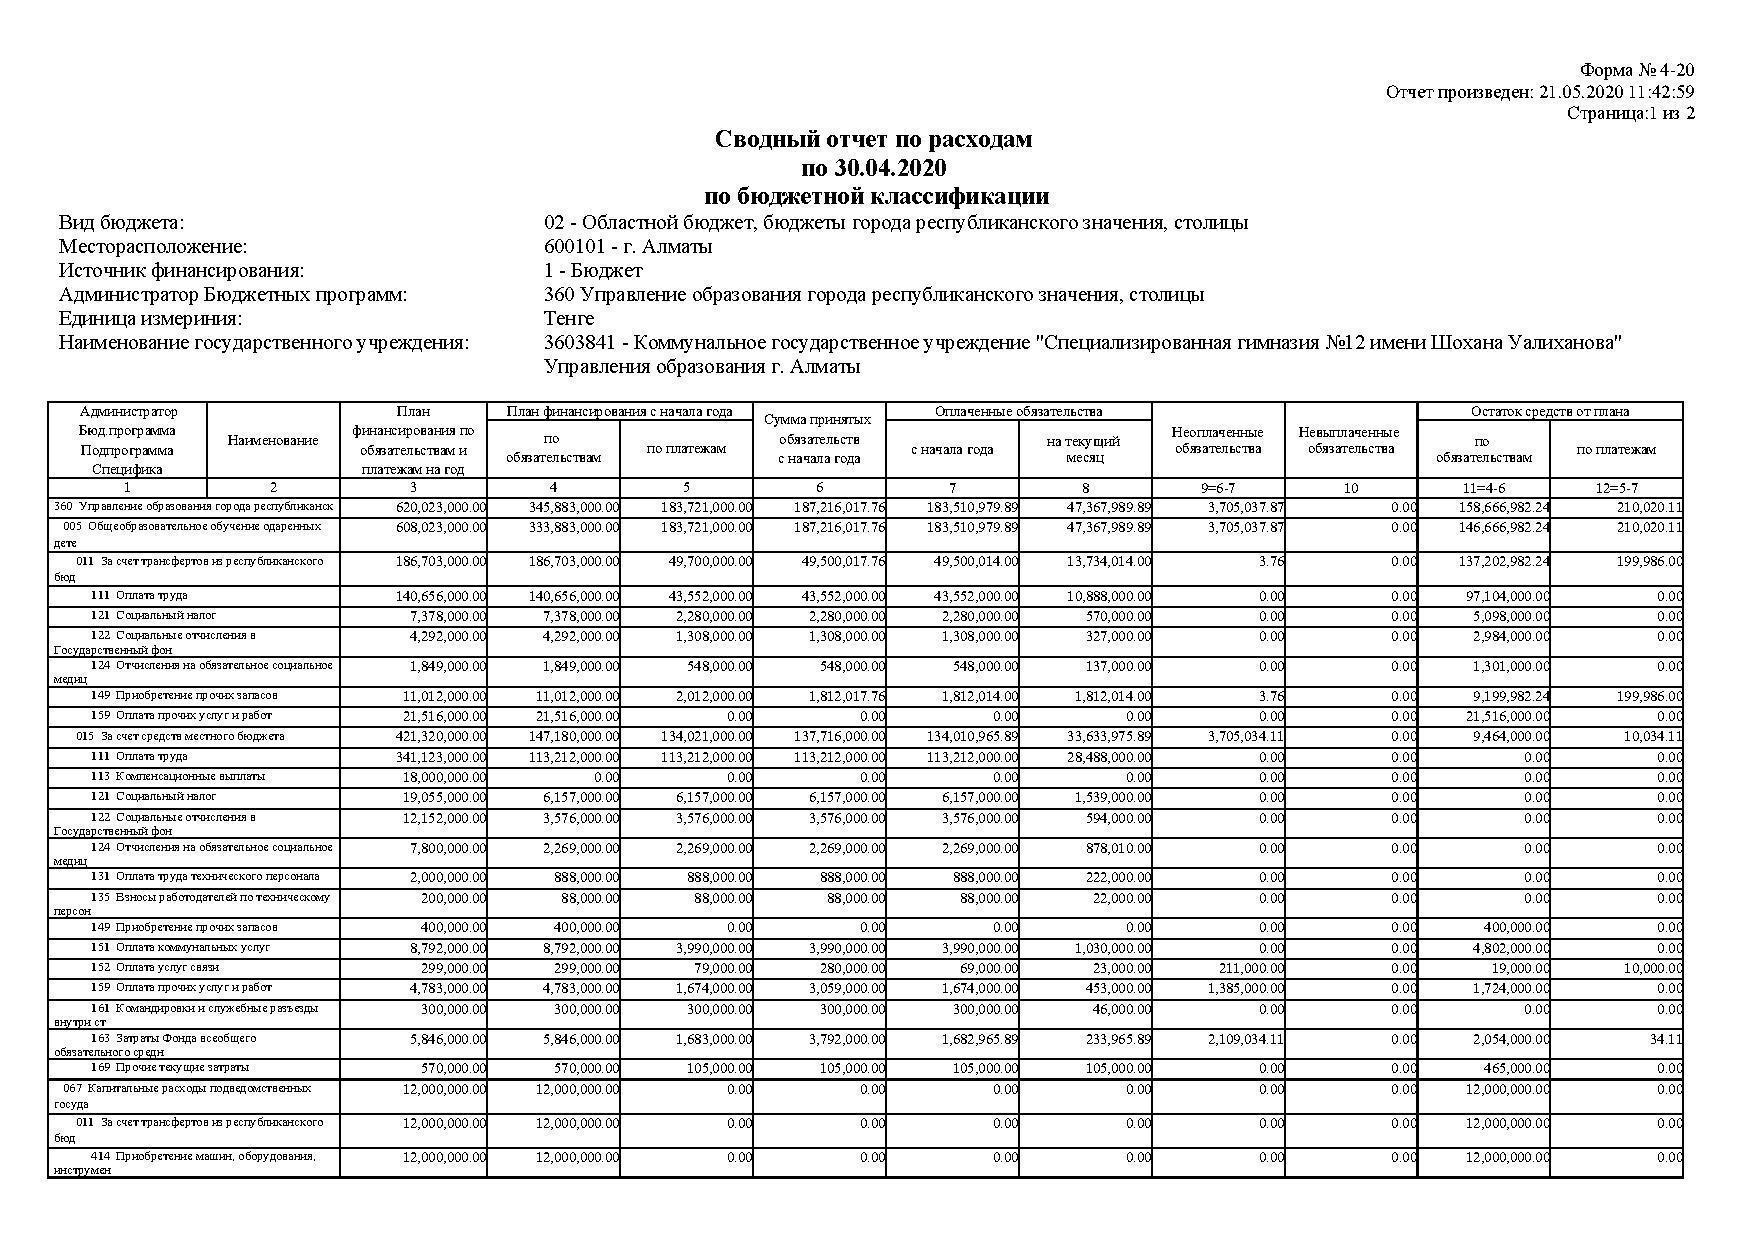 Сводный отчет по расходам по 30.04.2020 по бюджетной классификации